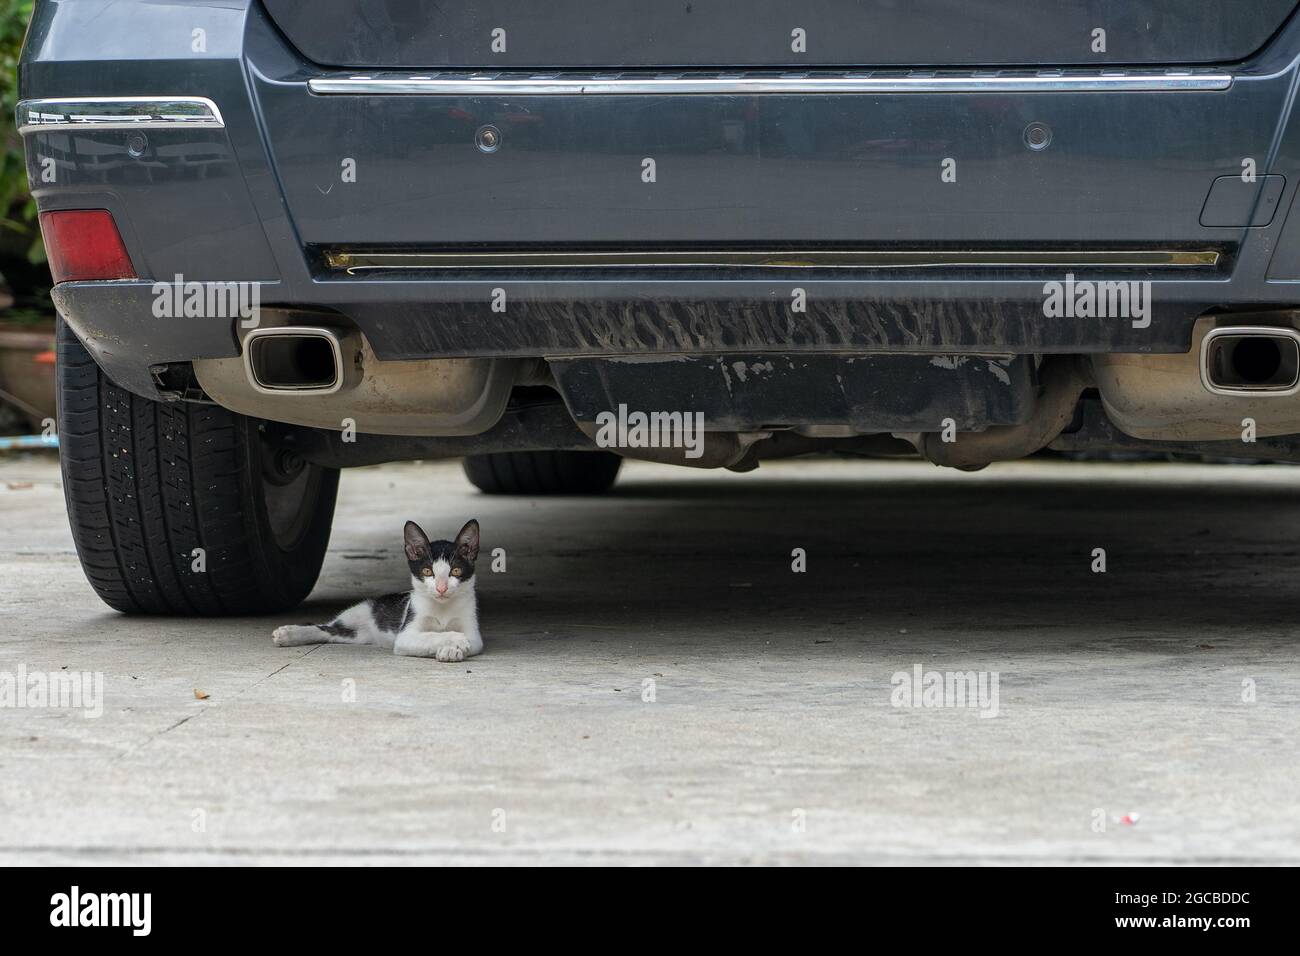 Streunende Katze versteckt sich unter dem Auto. Kätzchen liegt unter dem Auto, um dem heißen Wetter zu entkommen Stockfoto